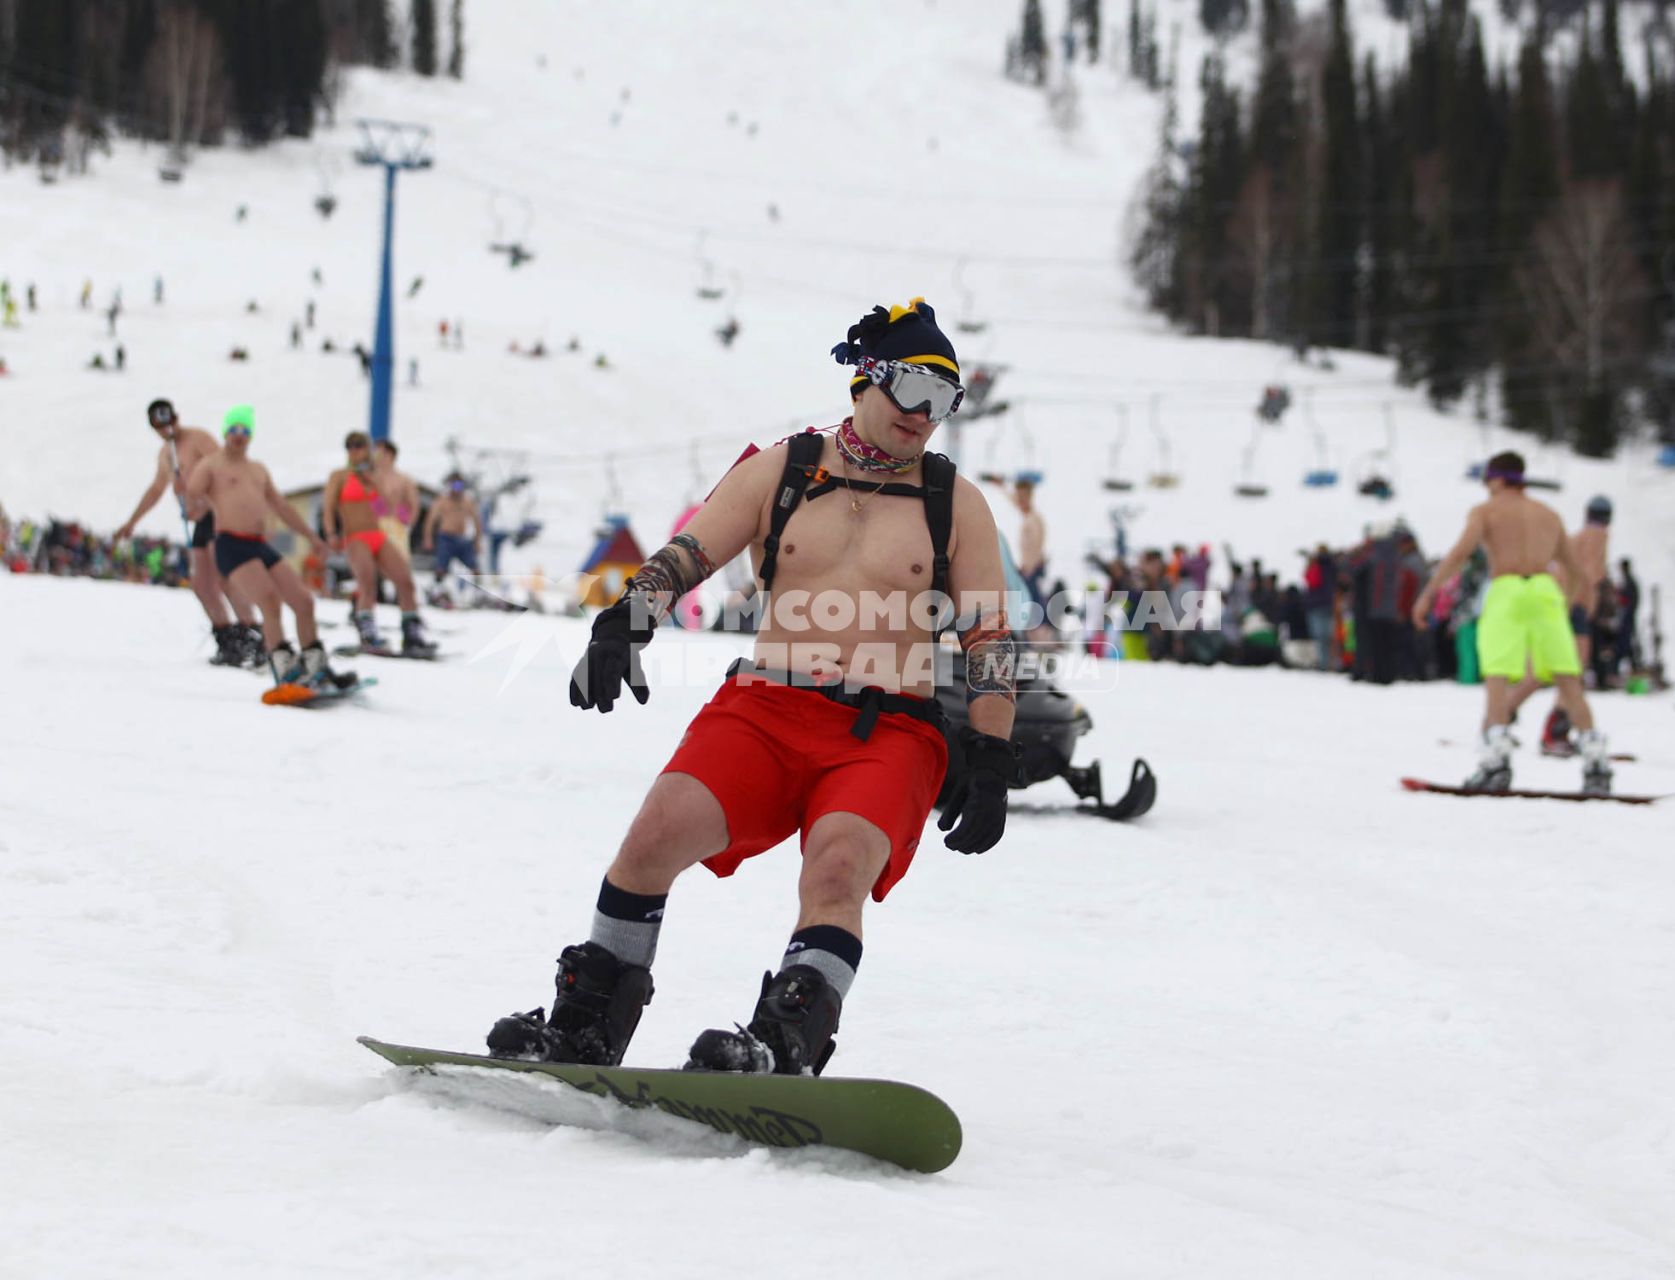 В рамках `Фестиваля весеннего солнцекатания` состоялся спуск полуголых лыжников и сноубордистов. На снимке: мужчина в шортах на сноуборде.